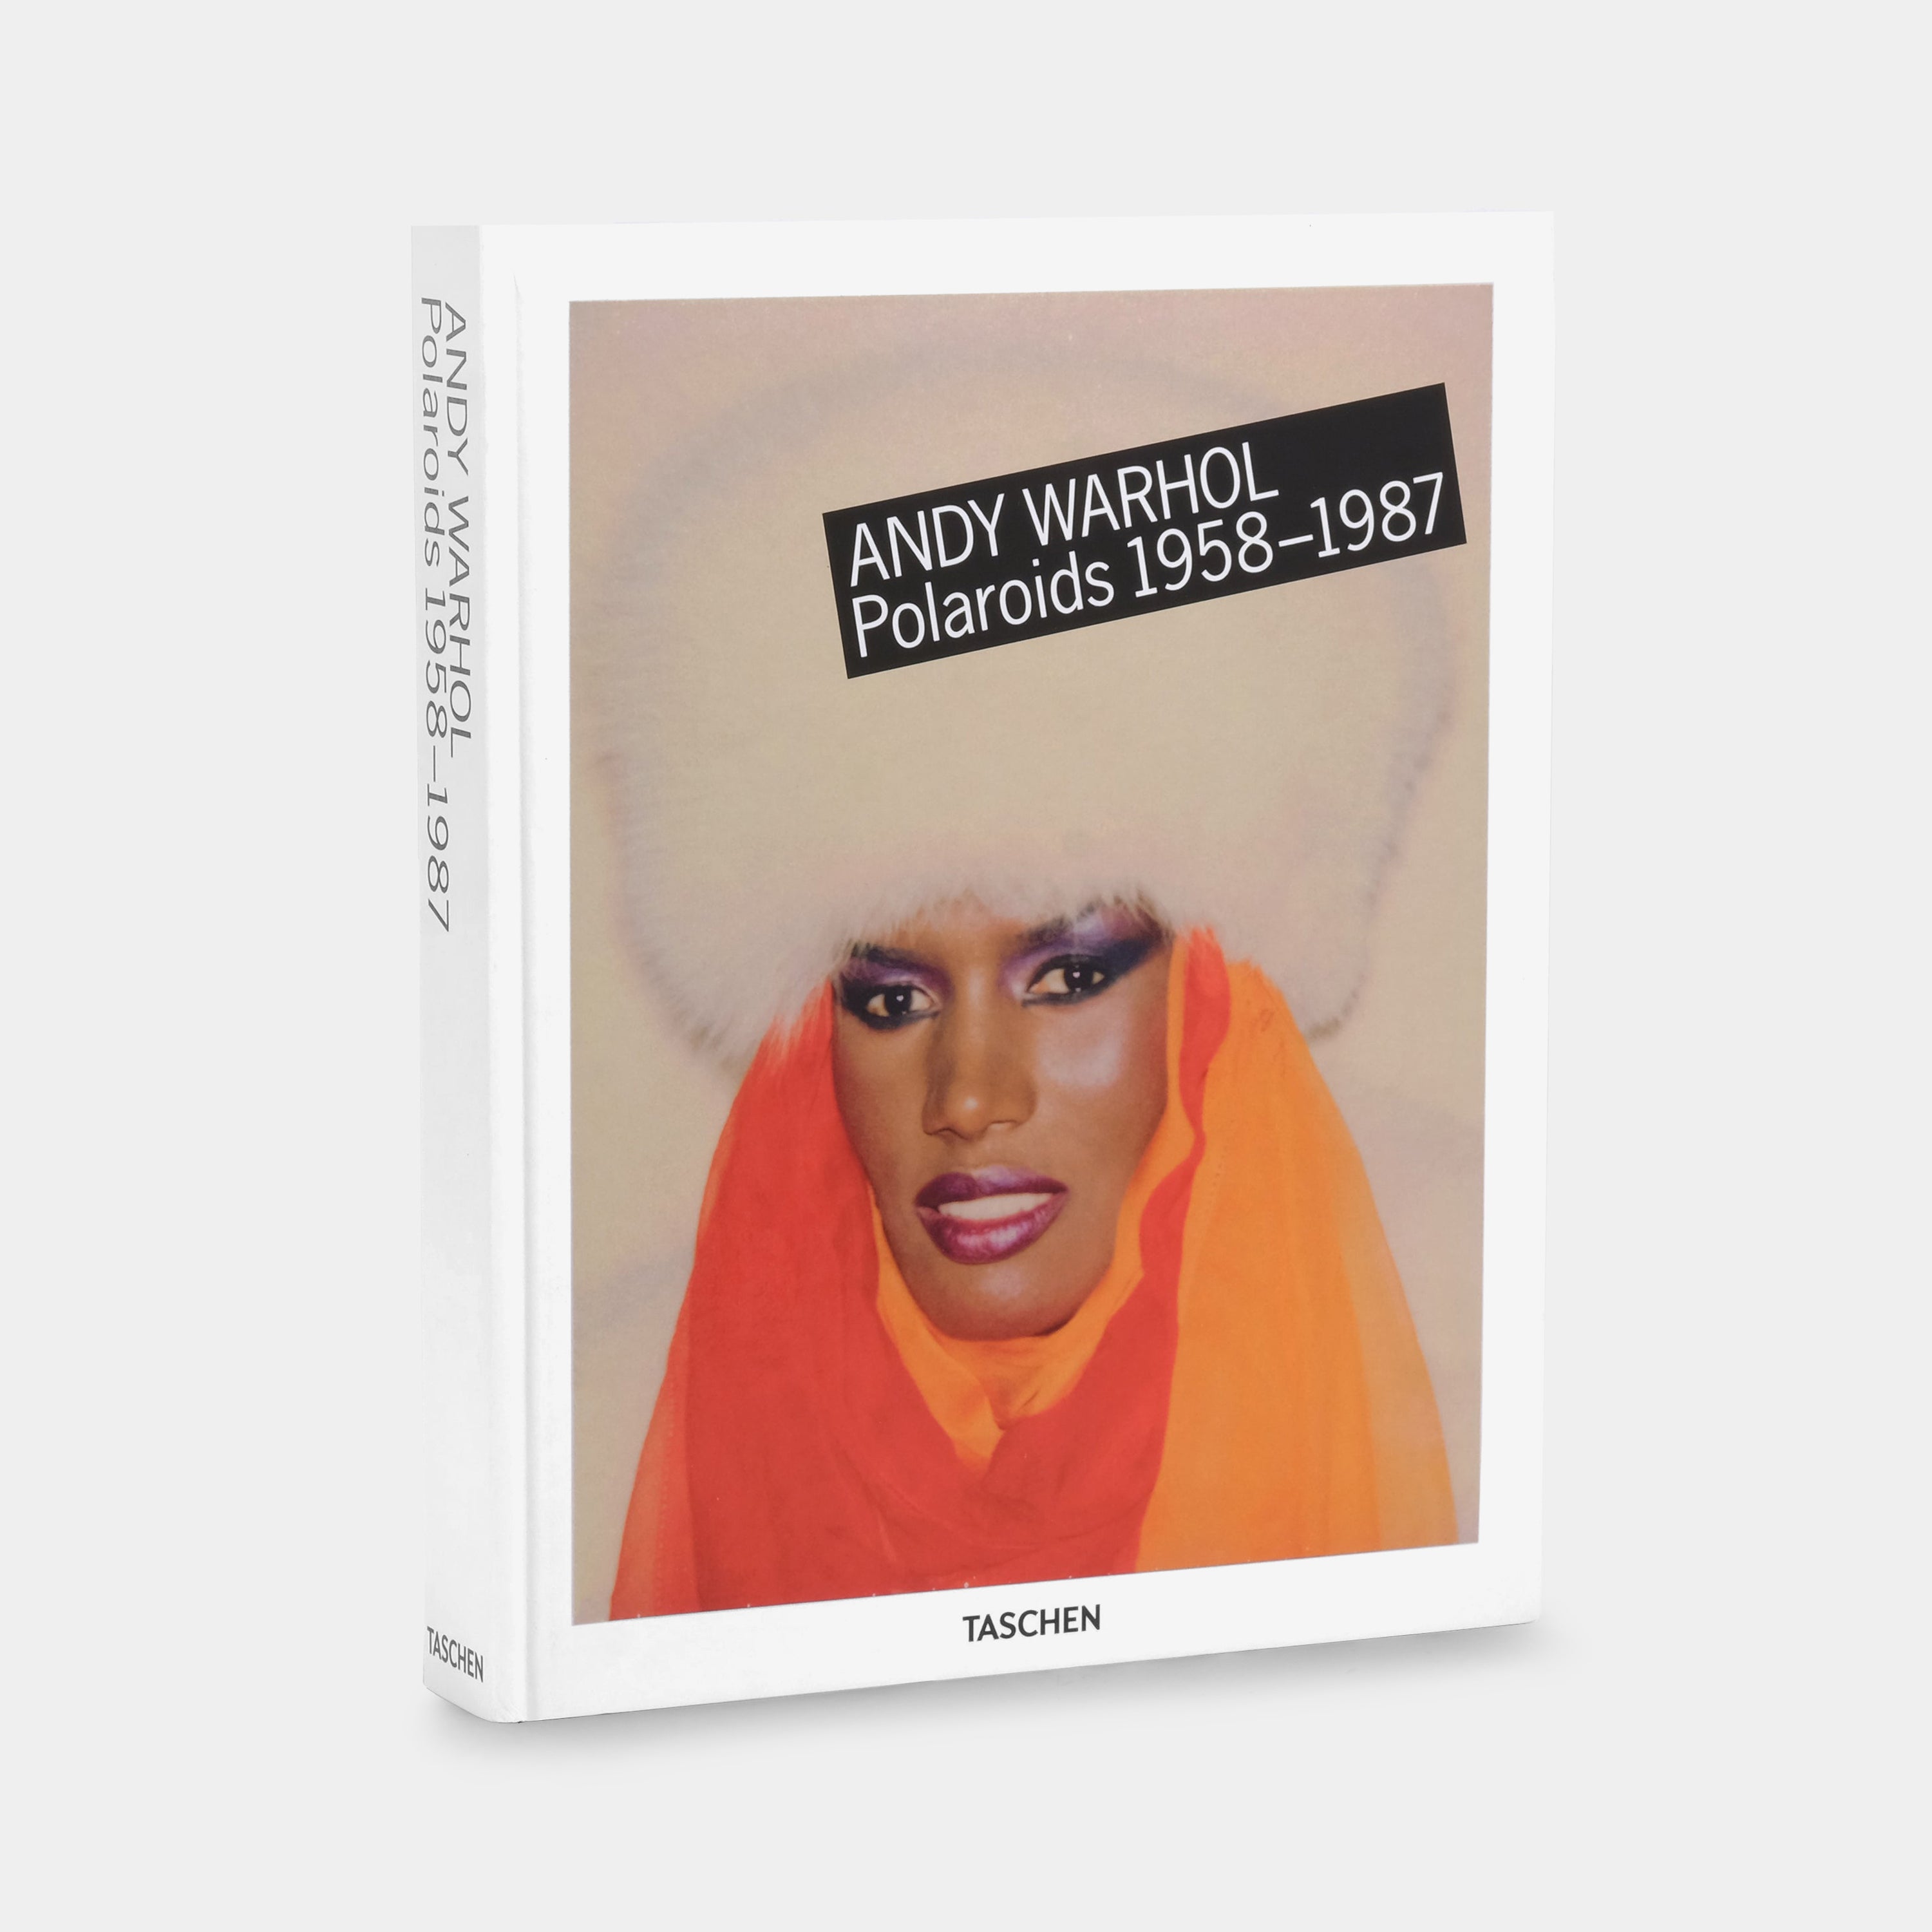 Andy Warhol: Polaroids (1958-1987) Taschen Book